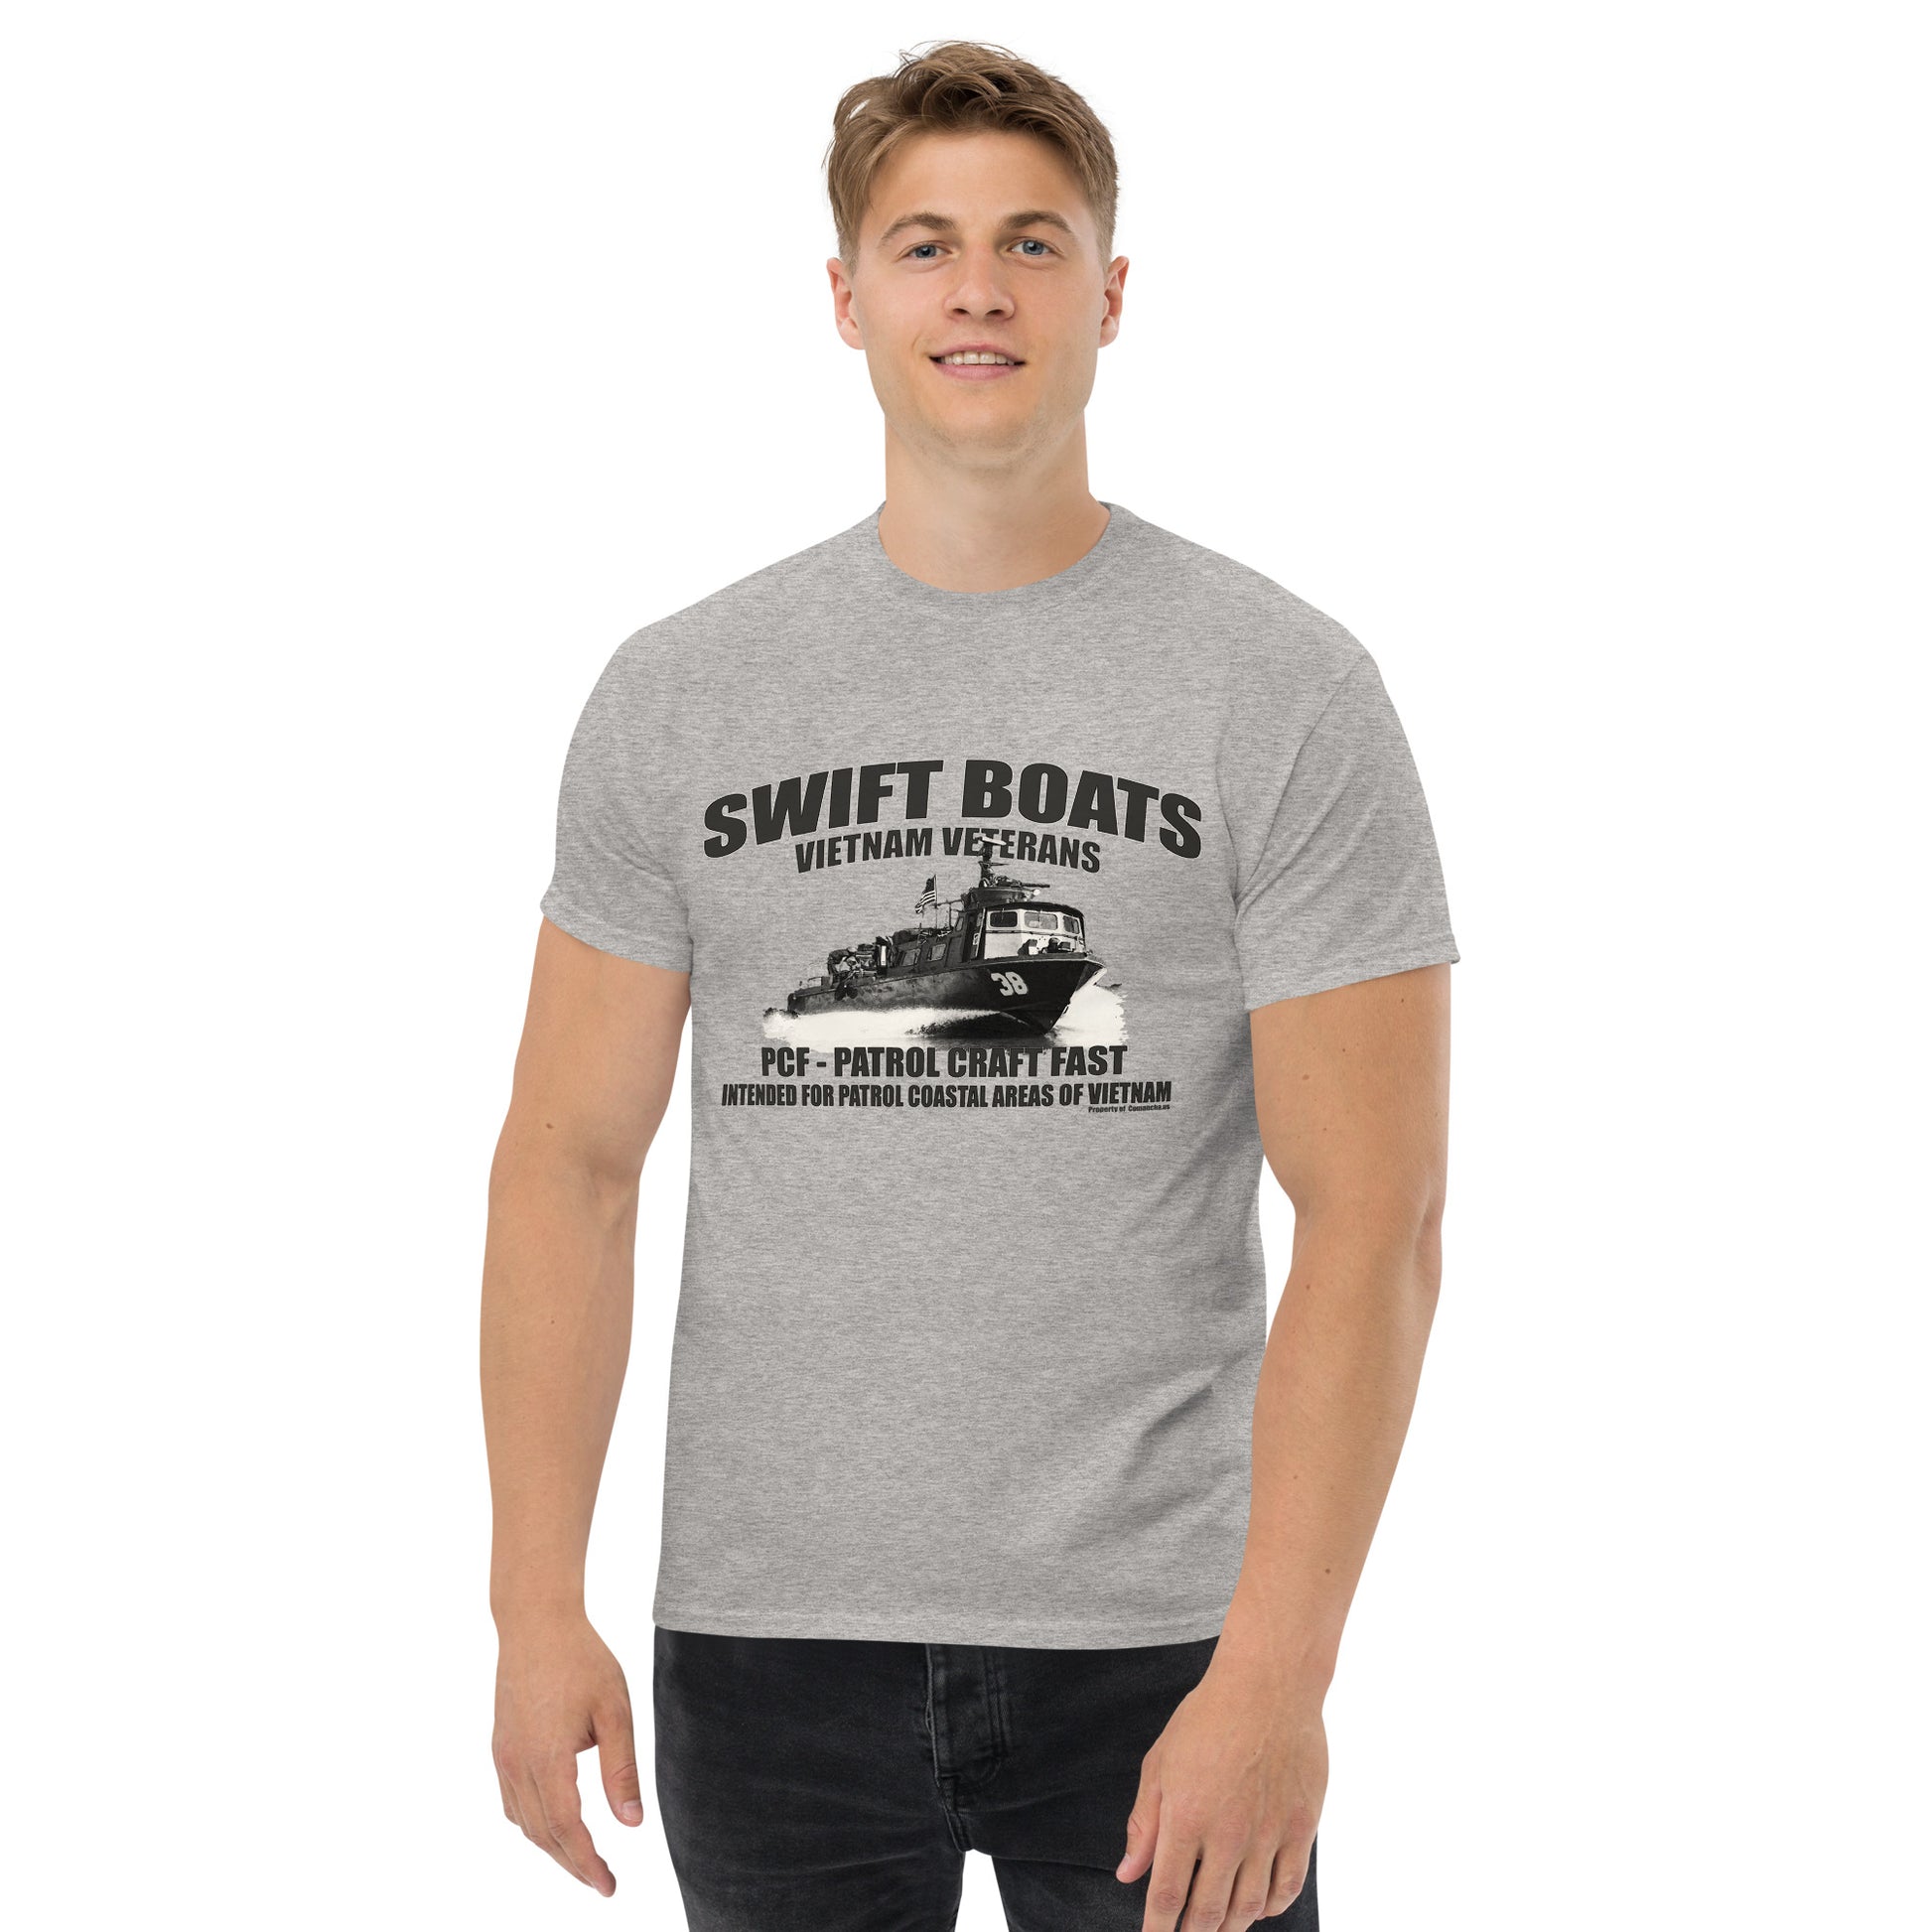 SWIFT BOATS Veterans tee, vietnam veterans tee,veterans tee, swift boats t-shirt,comancha t-shirt,